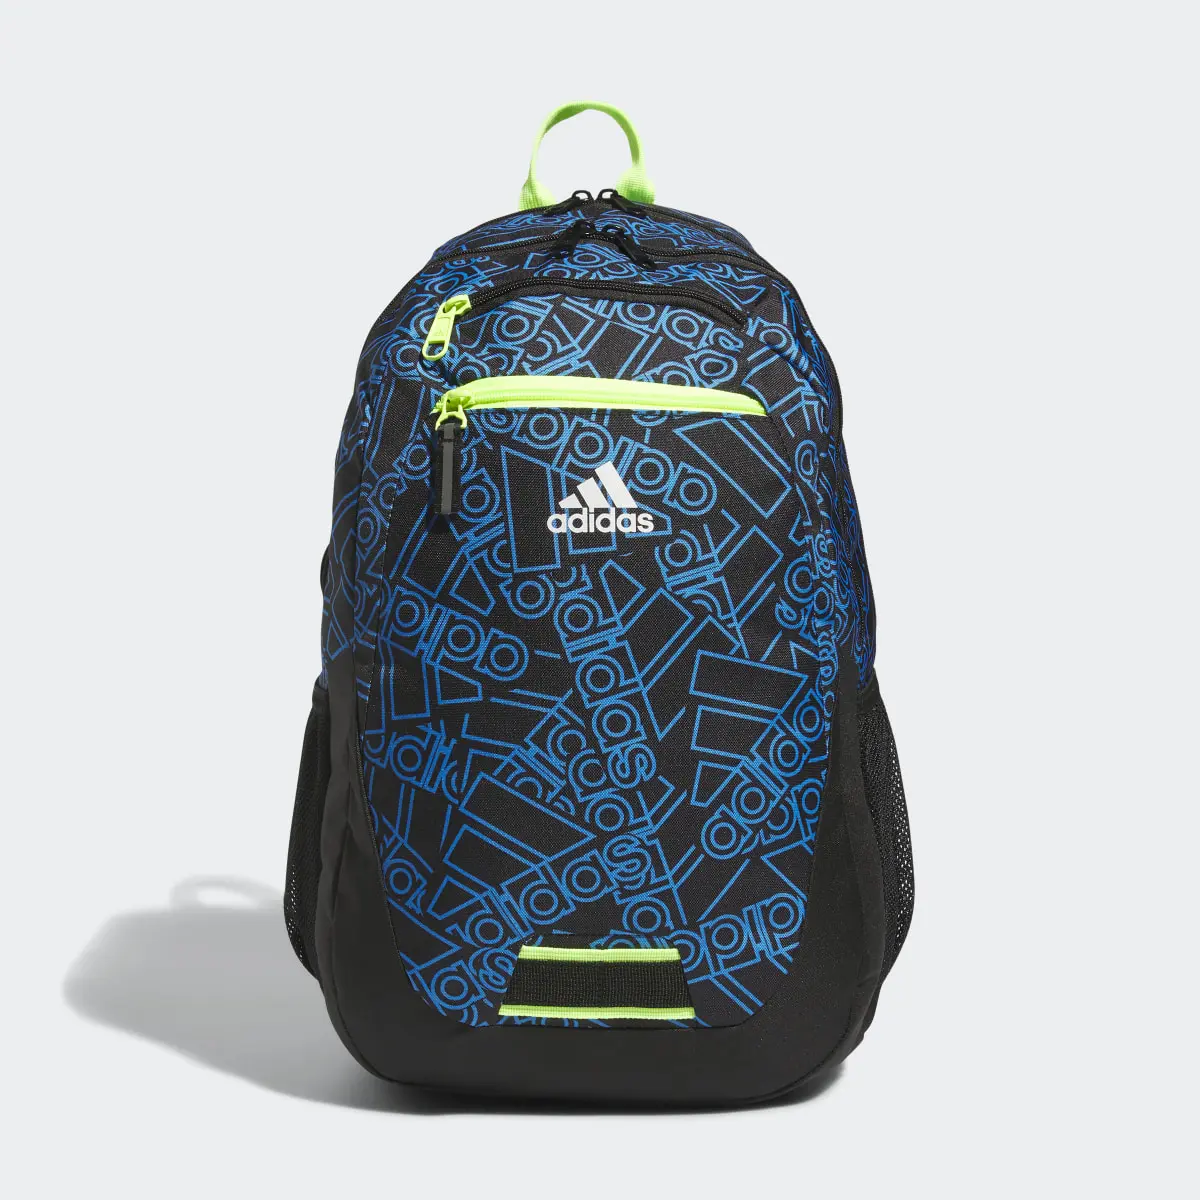 Adidas Foundation 6 Backpack. 2